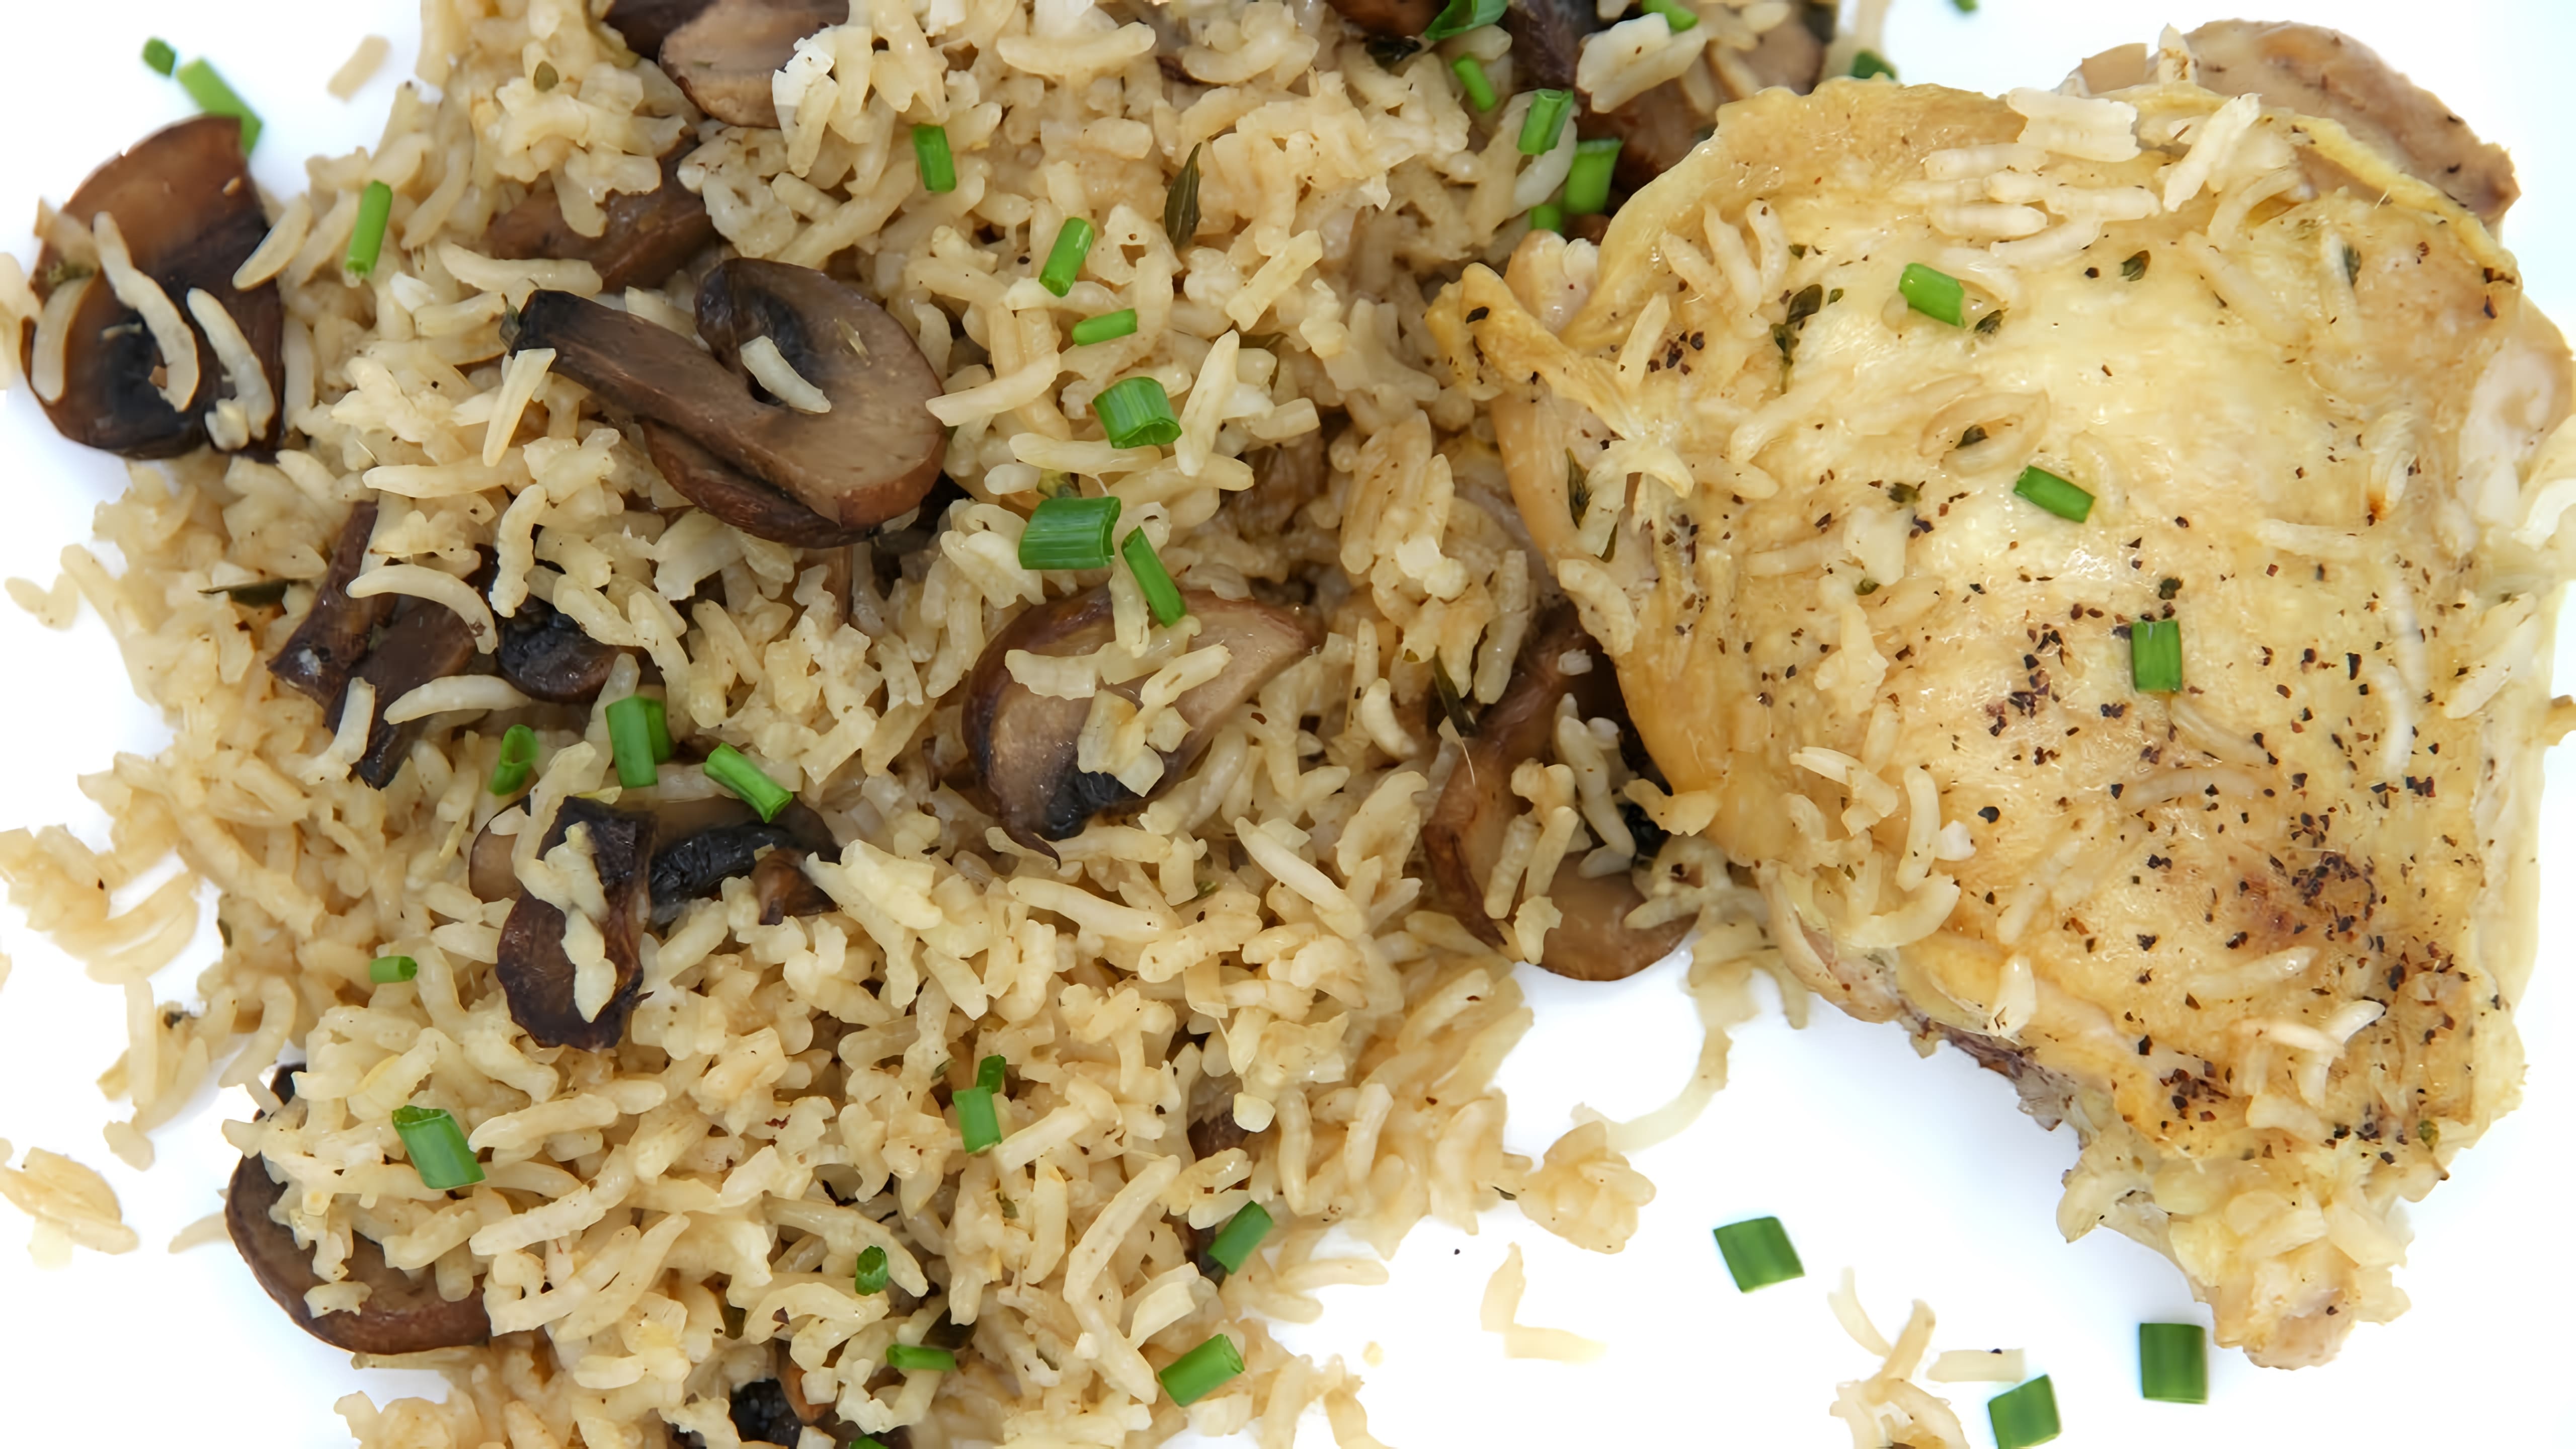 Видео: Моментальный ужин или обед в одной сковороде. Куриные бедра и рис с грибами.Очень вкусно и просто!